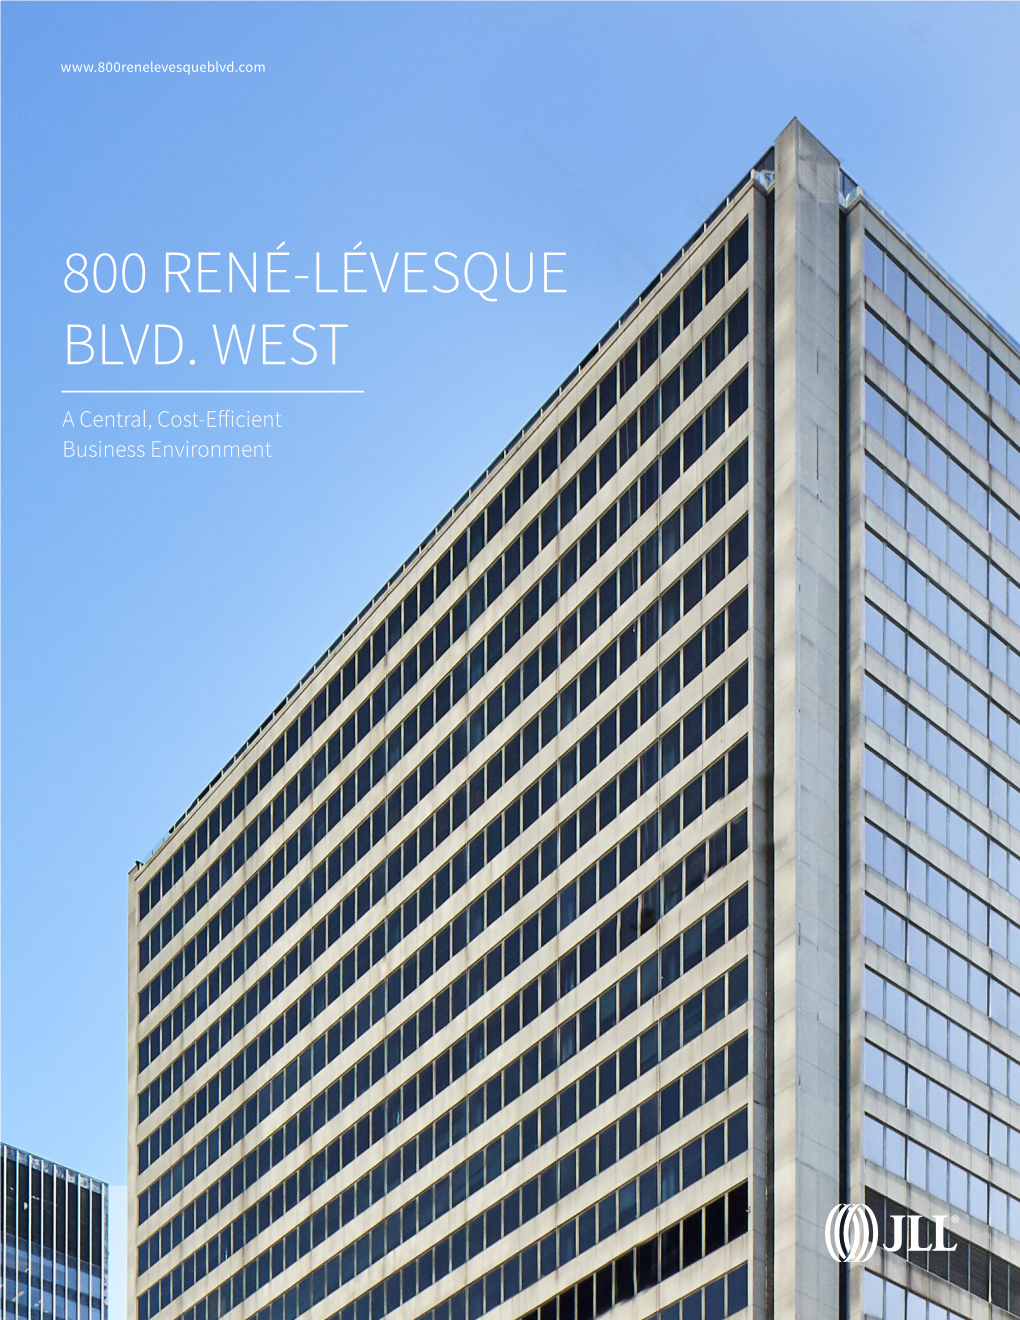 800 René-Lévesque Blvd. West